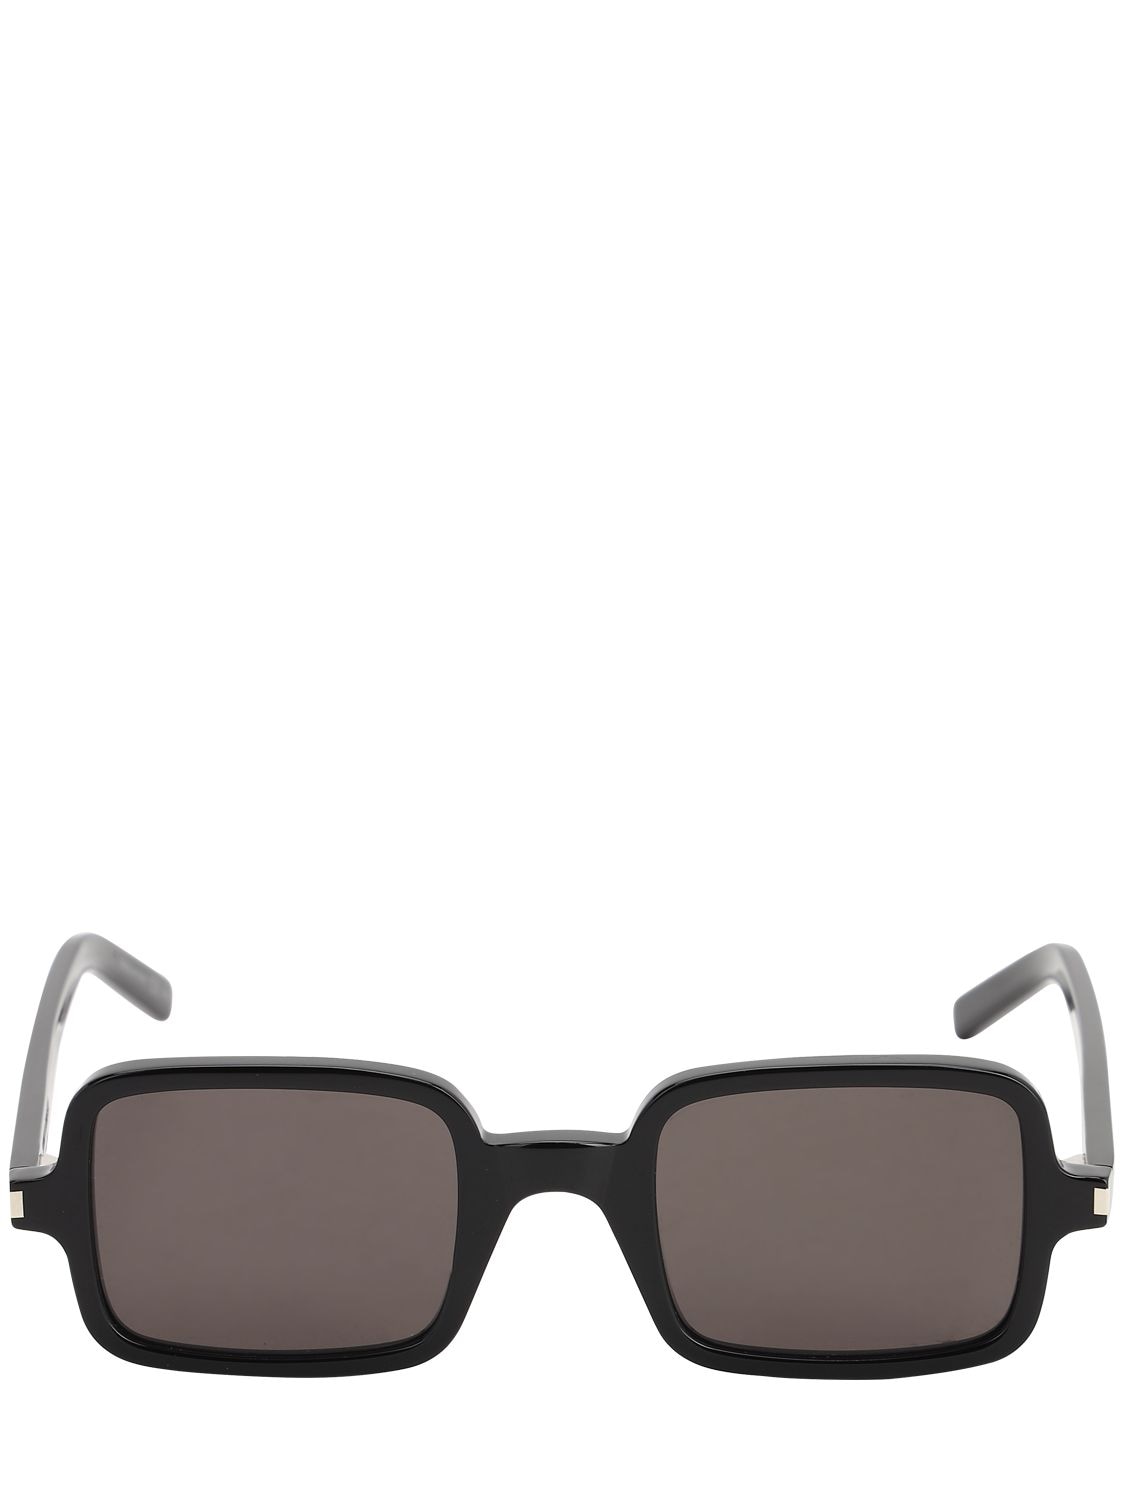 Saint Laurent Squared Acetate Sunglasses In Black